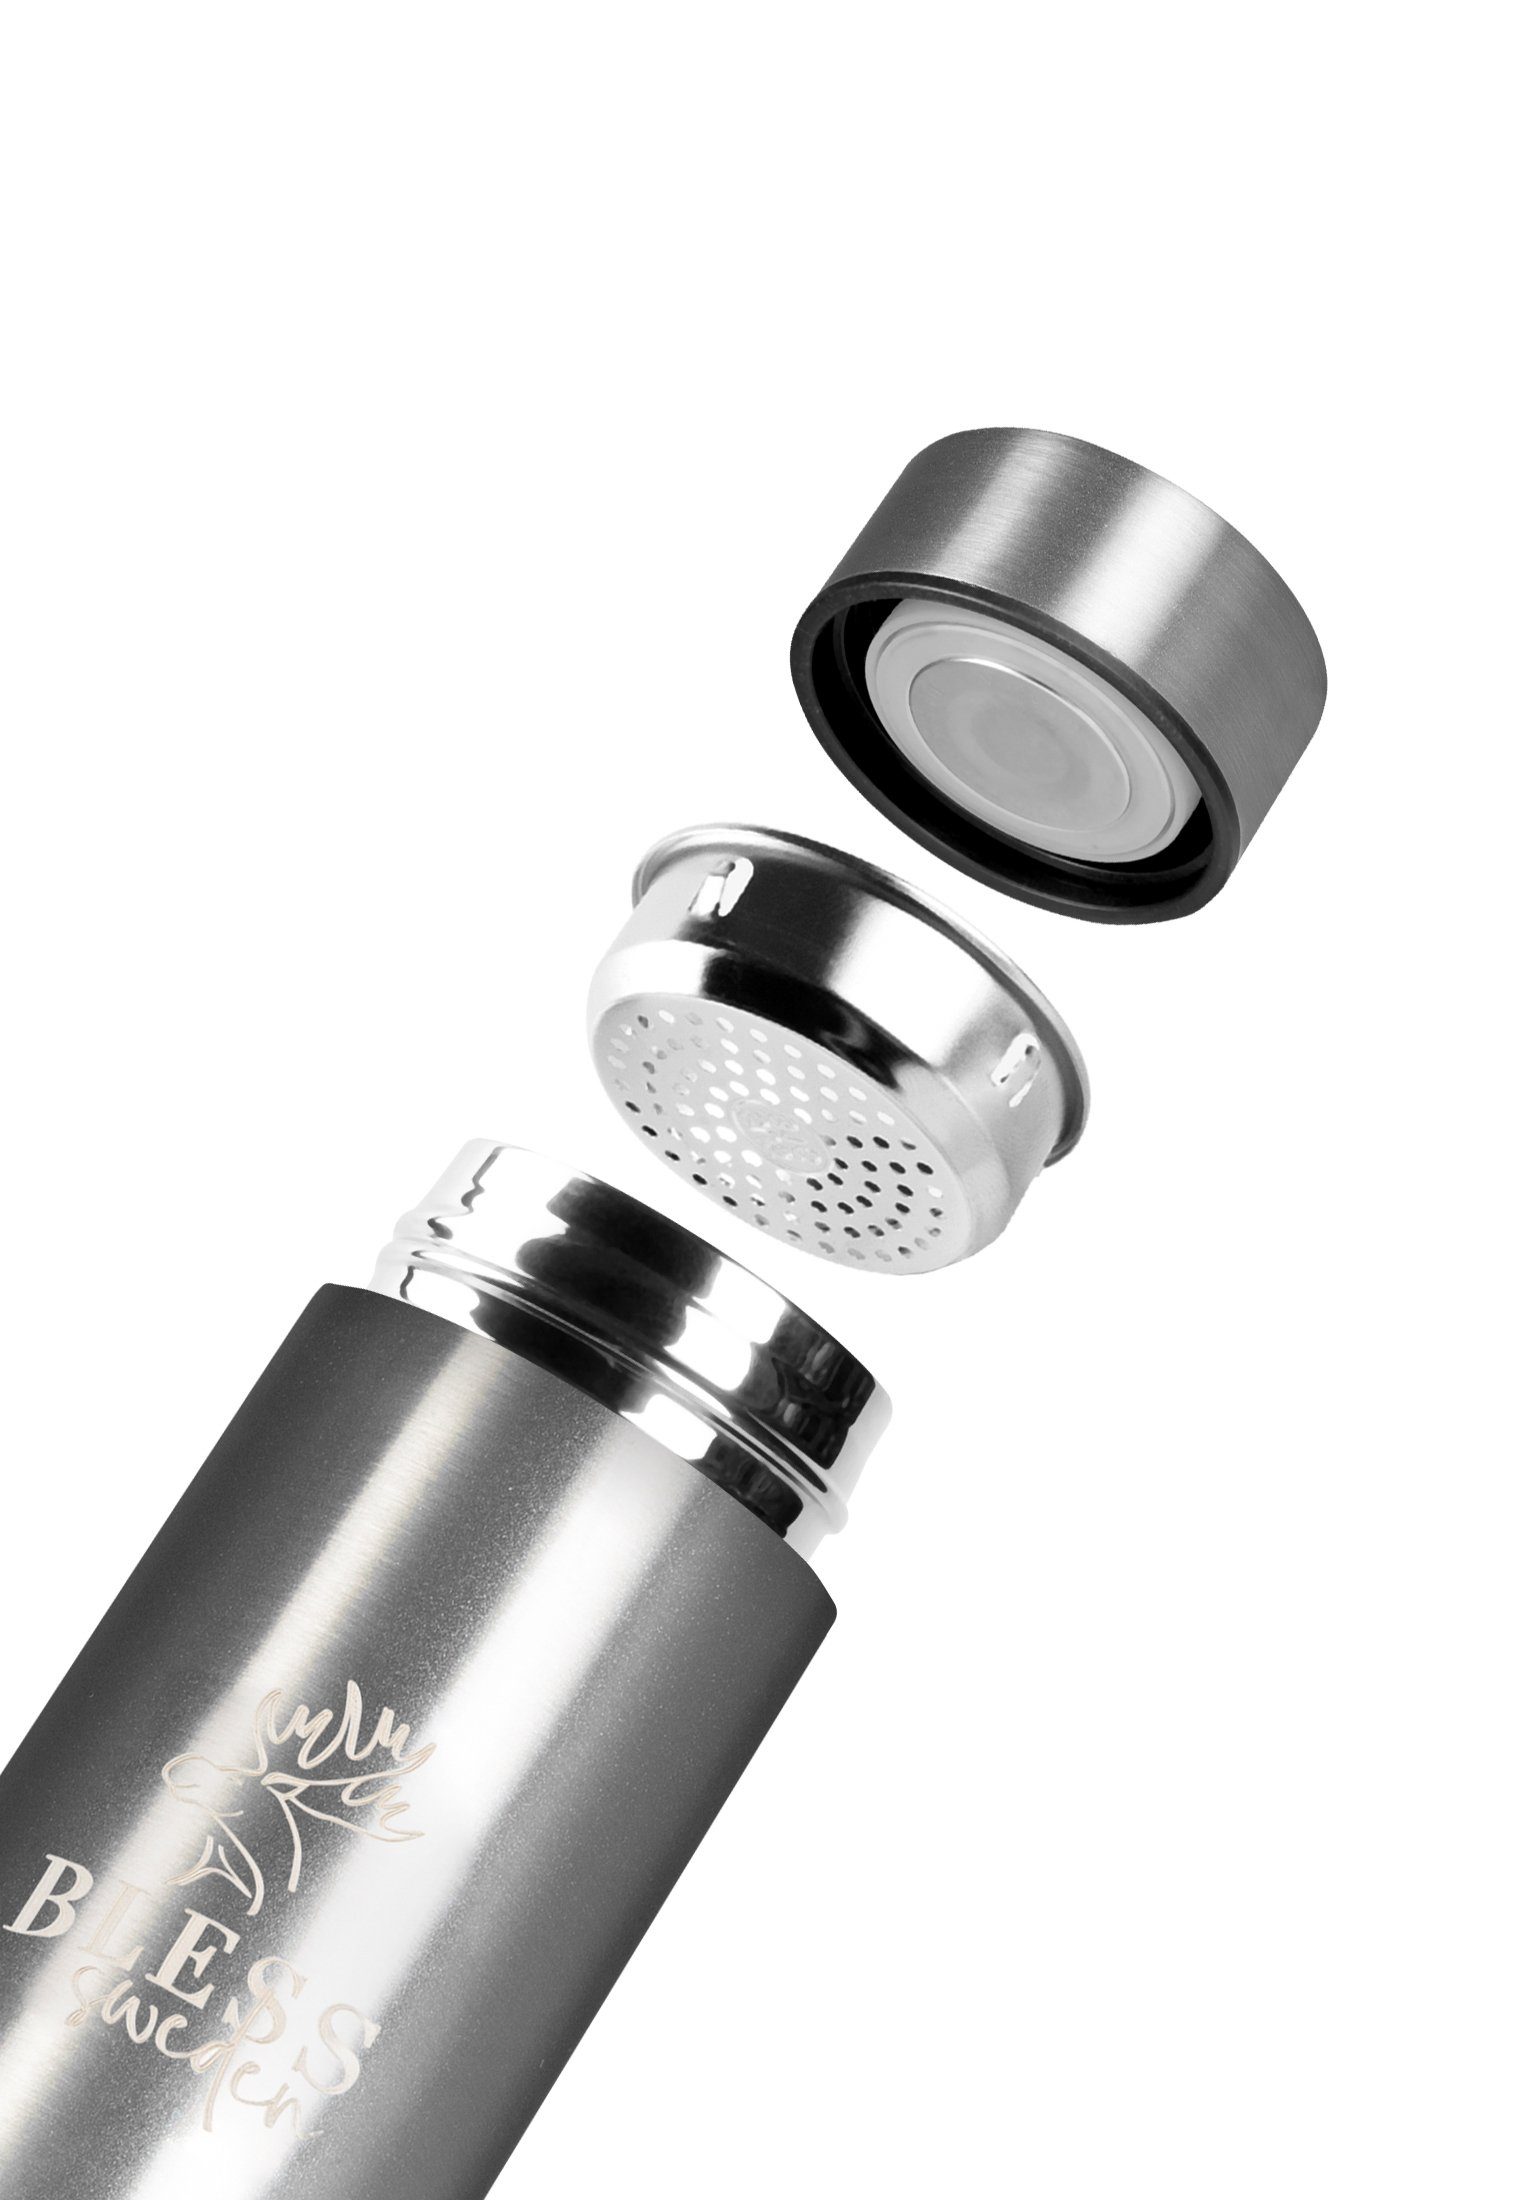 Trinkflasche Trinkflasche ml BLESS Bottle 500 Smart Sweden Silver LED-Temperaturanzeige